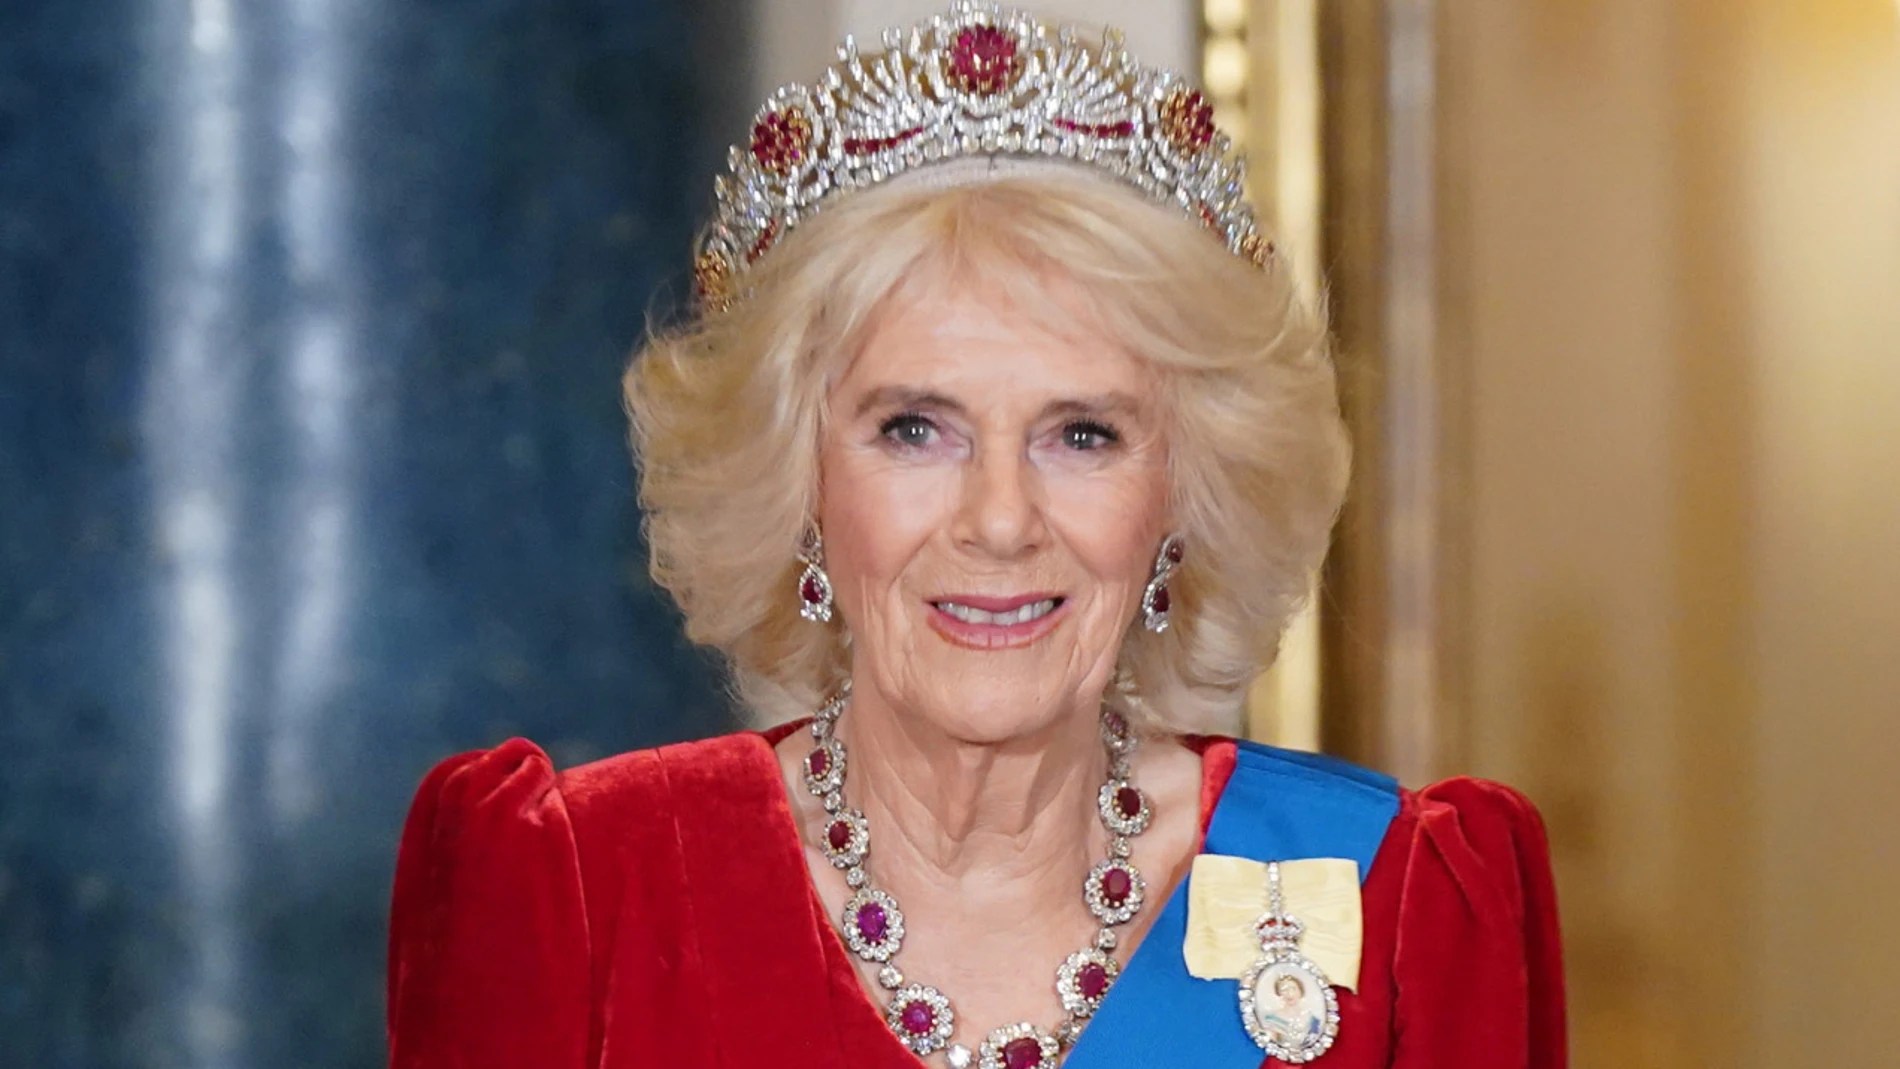 Nuevo revés de salud para la familia real británica: Camilla no levanta cabeza